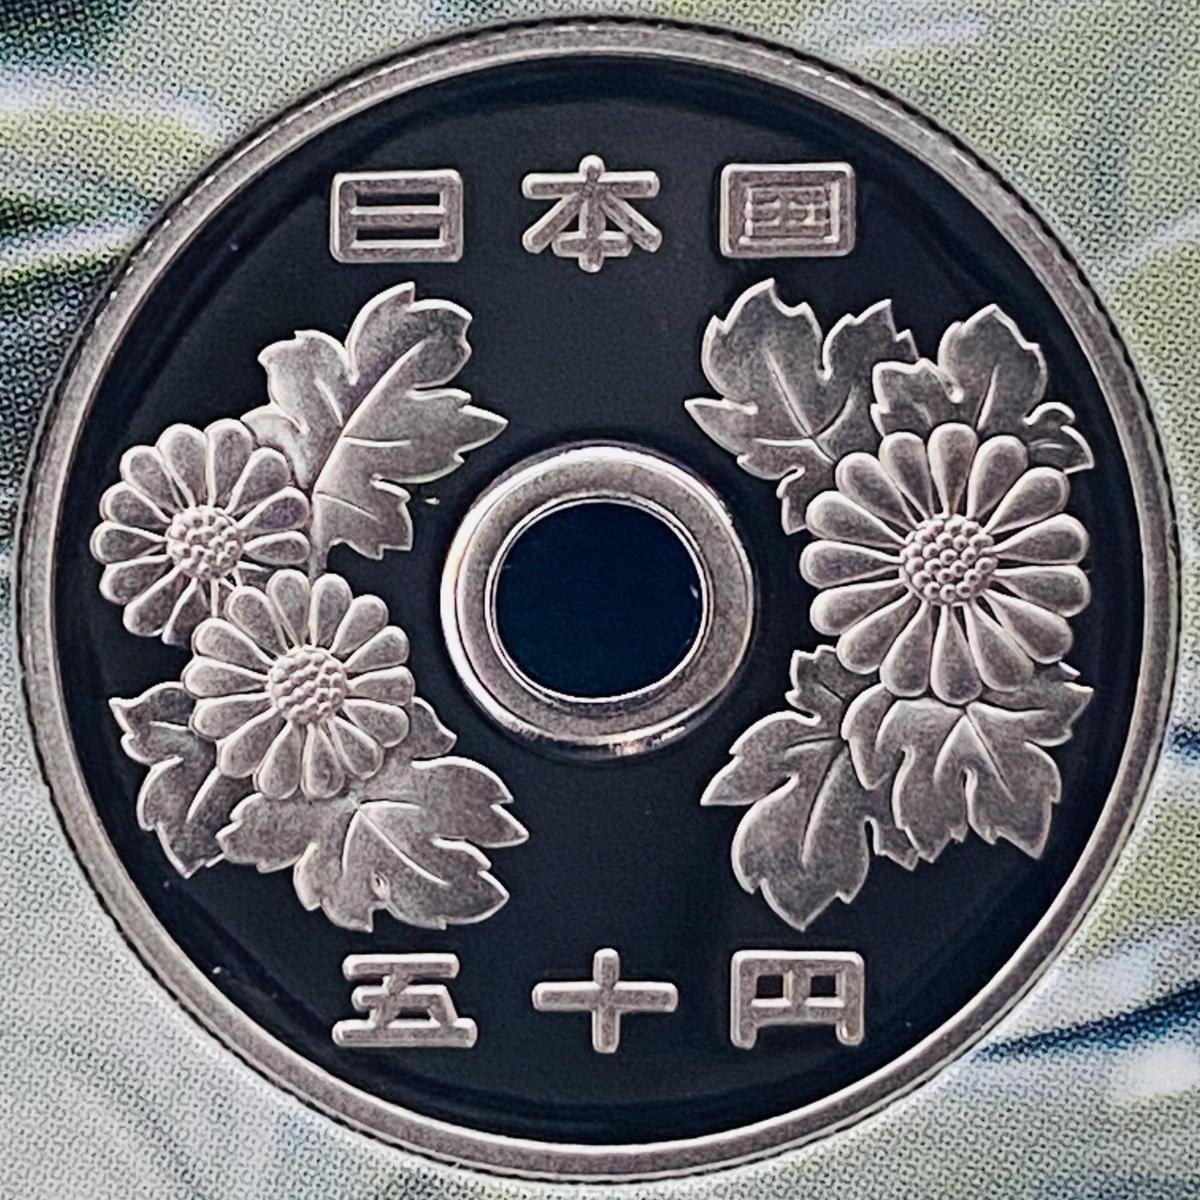 1円~ 1円アルミニウム貨幣誕生50周年 2005年 プルーフ貨幣セット 銀約20g 記念硬貨 貴金属 メダル コイン PT2005i_画像7